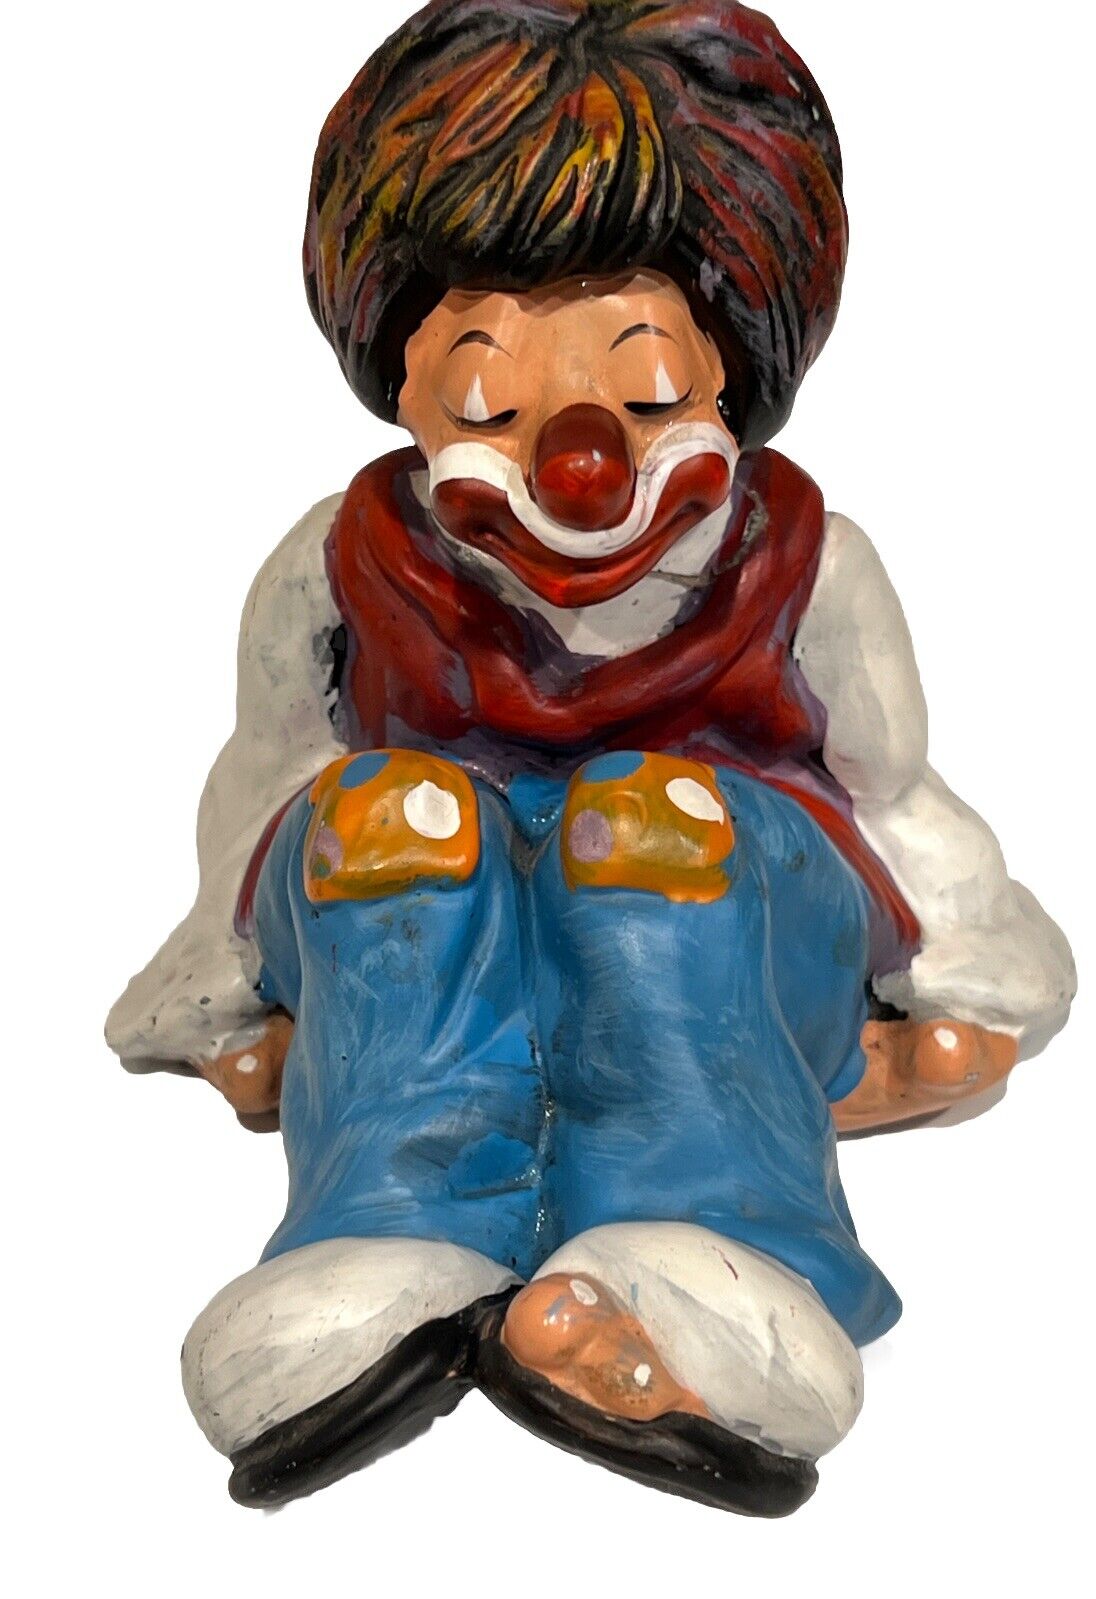 Vintage 1977 Clown Figurine by Artist Annette Little